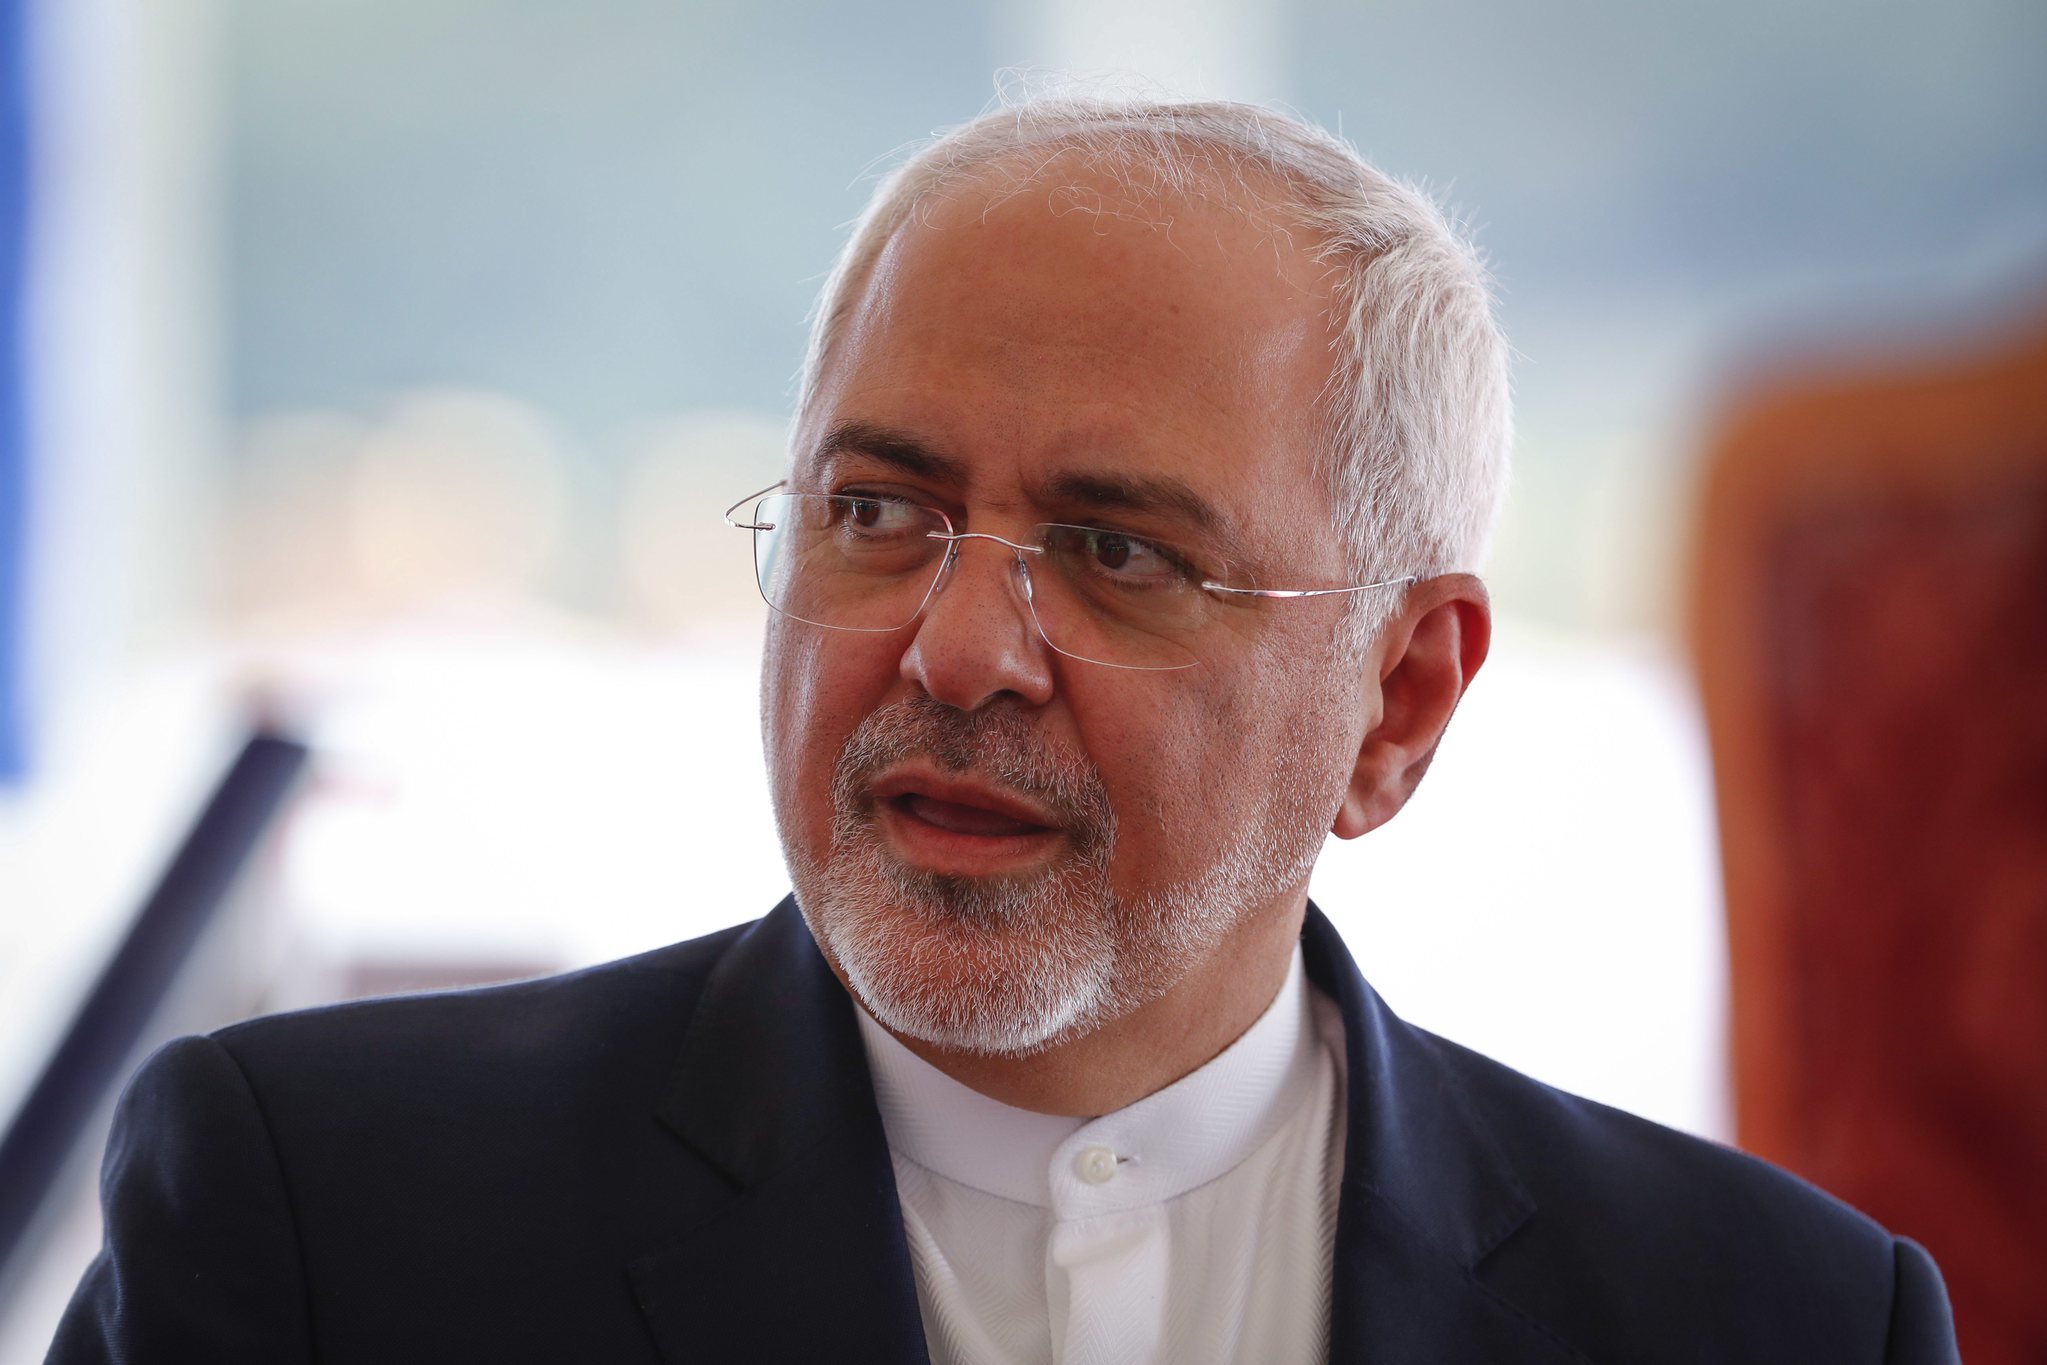 İran Dışişleri Bakanı Muhammed Cevad Zarif neden istifa etti? İşte Zarif’in istifasının ipuçları...